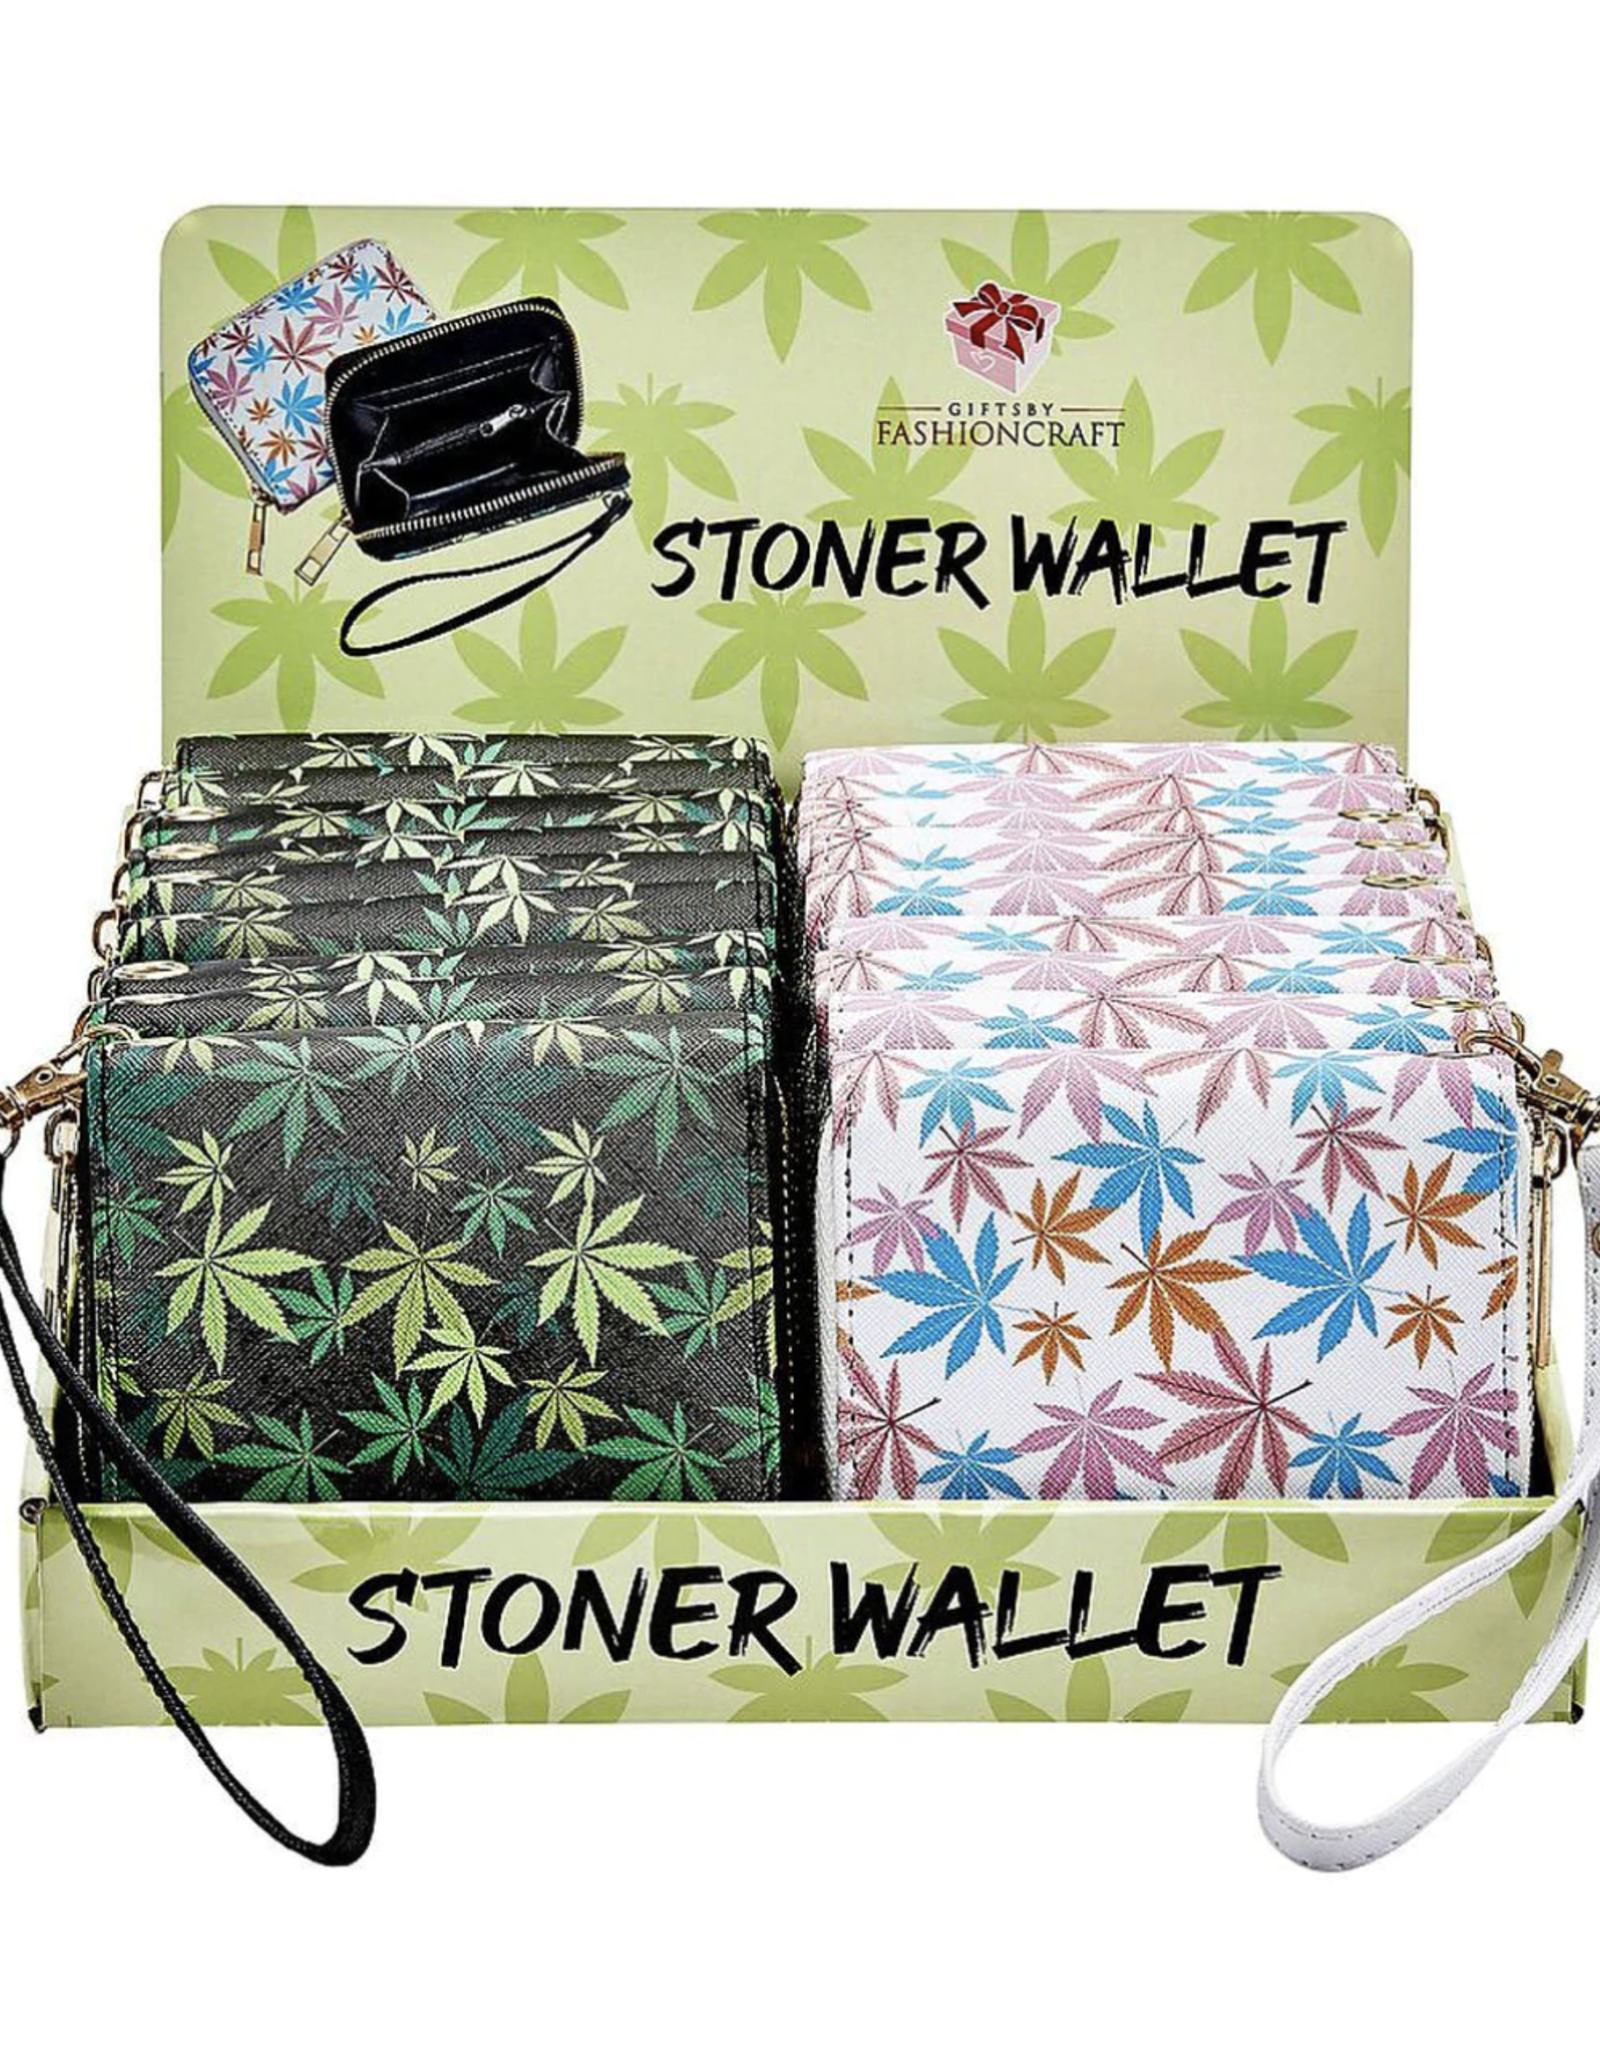 Stoner Wallet - Black or White